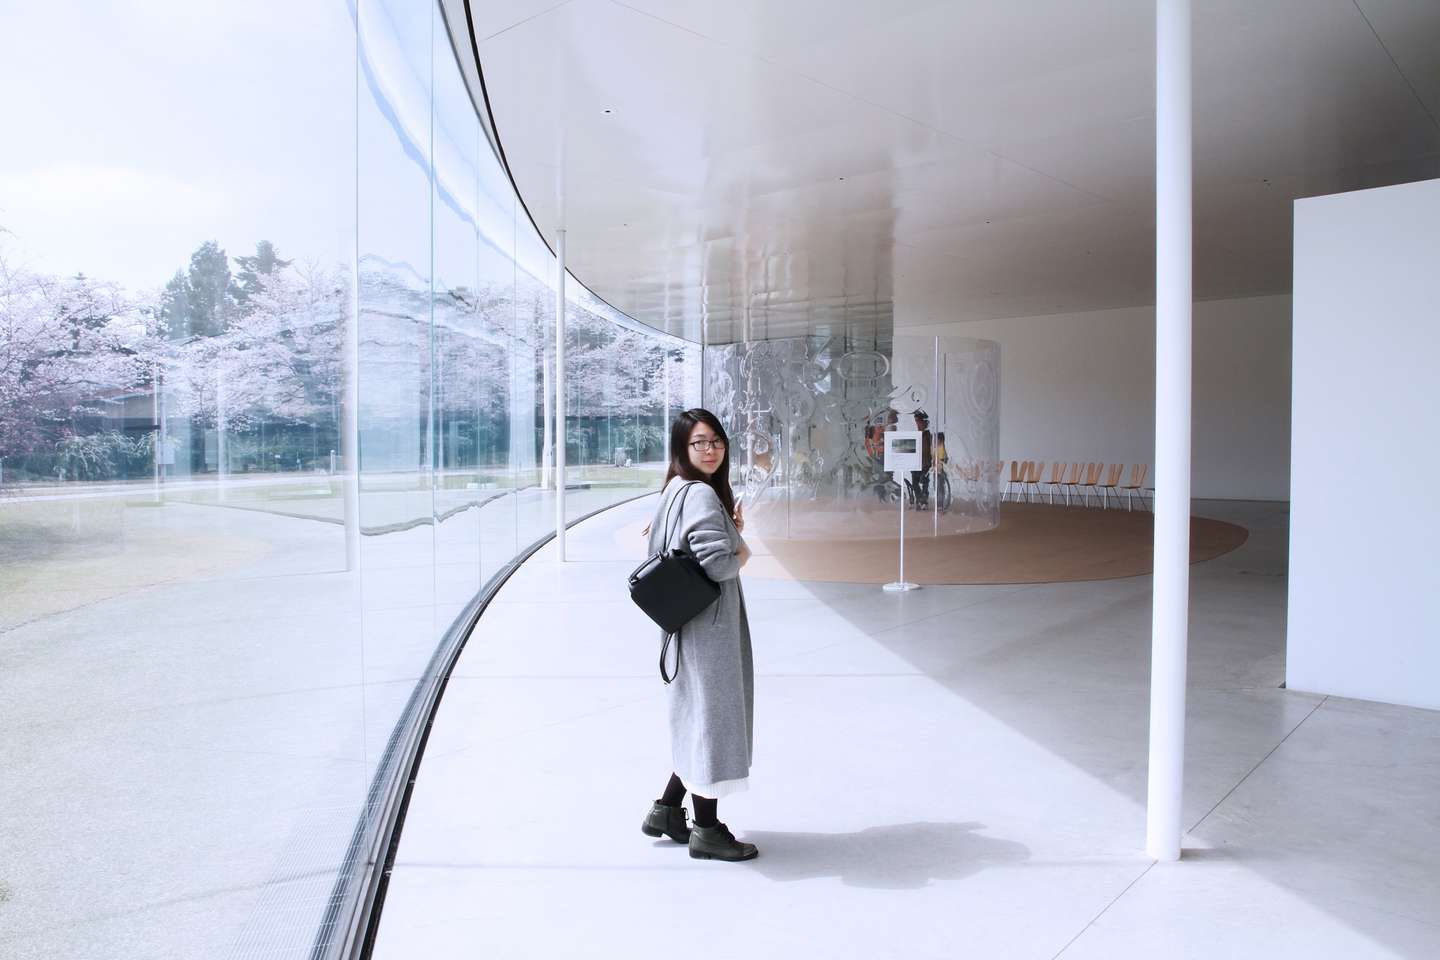 日本建筑控 金泽21世纪美术馆 知乎